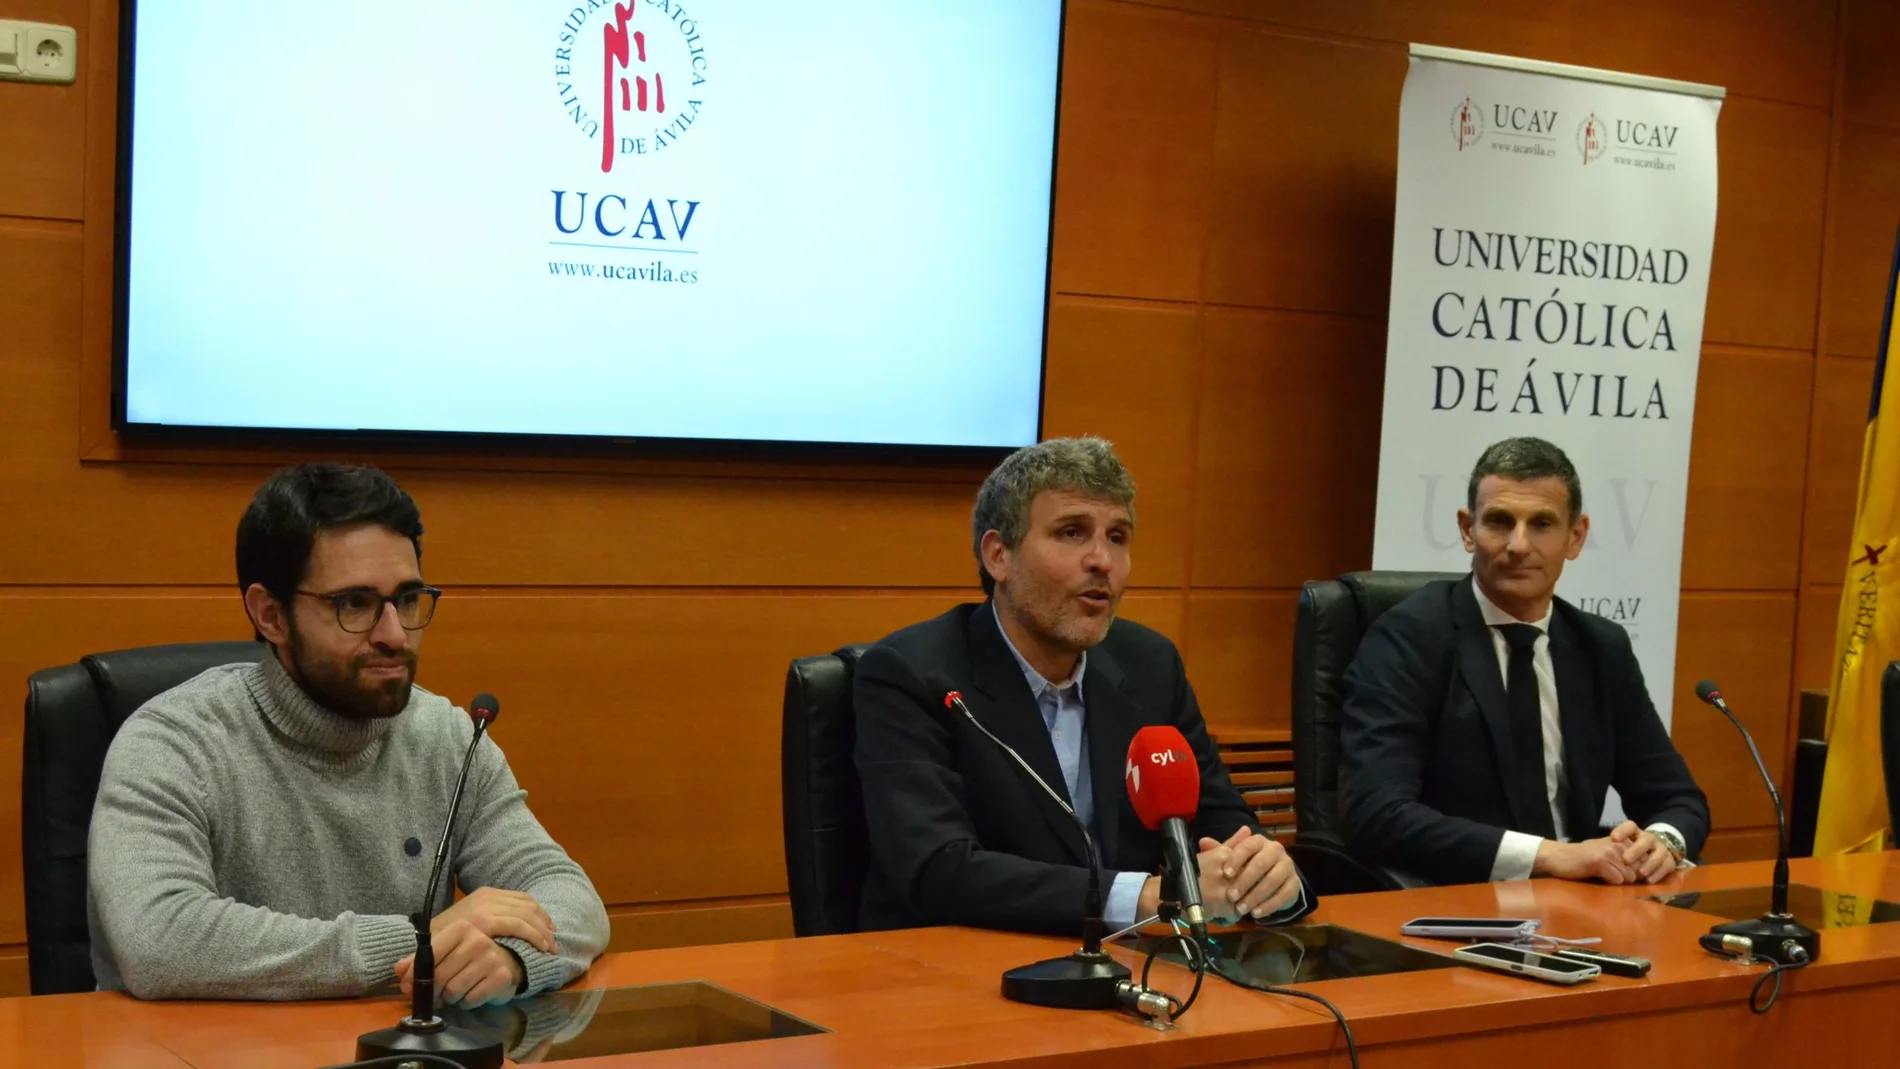 El director de la Escuela de Negocios de la Ucav, Ricardo Reier presenta el webinar junto a David García y Julio Delgado